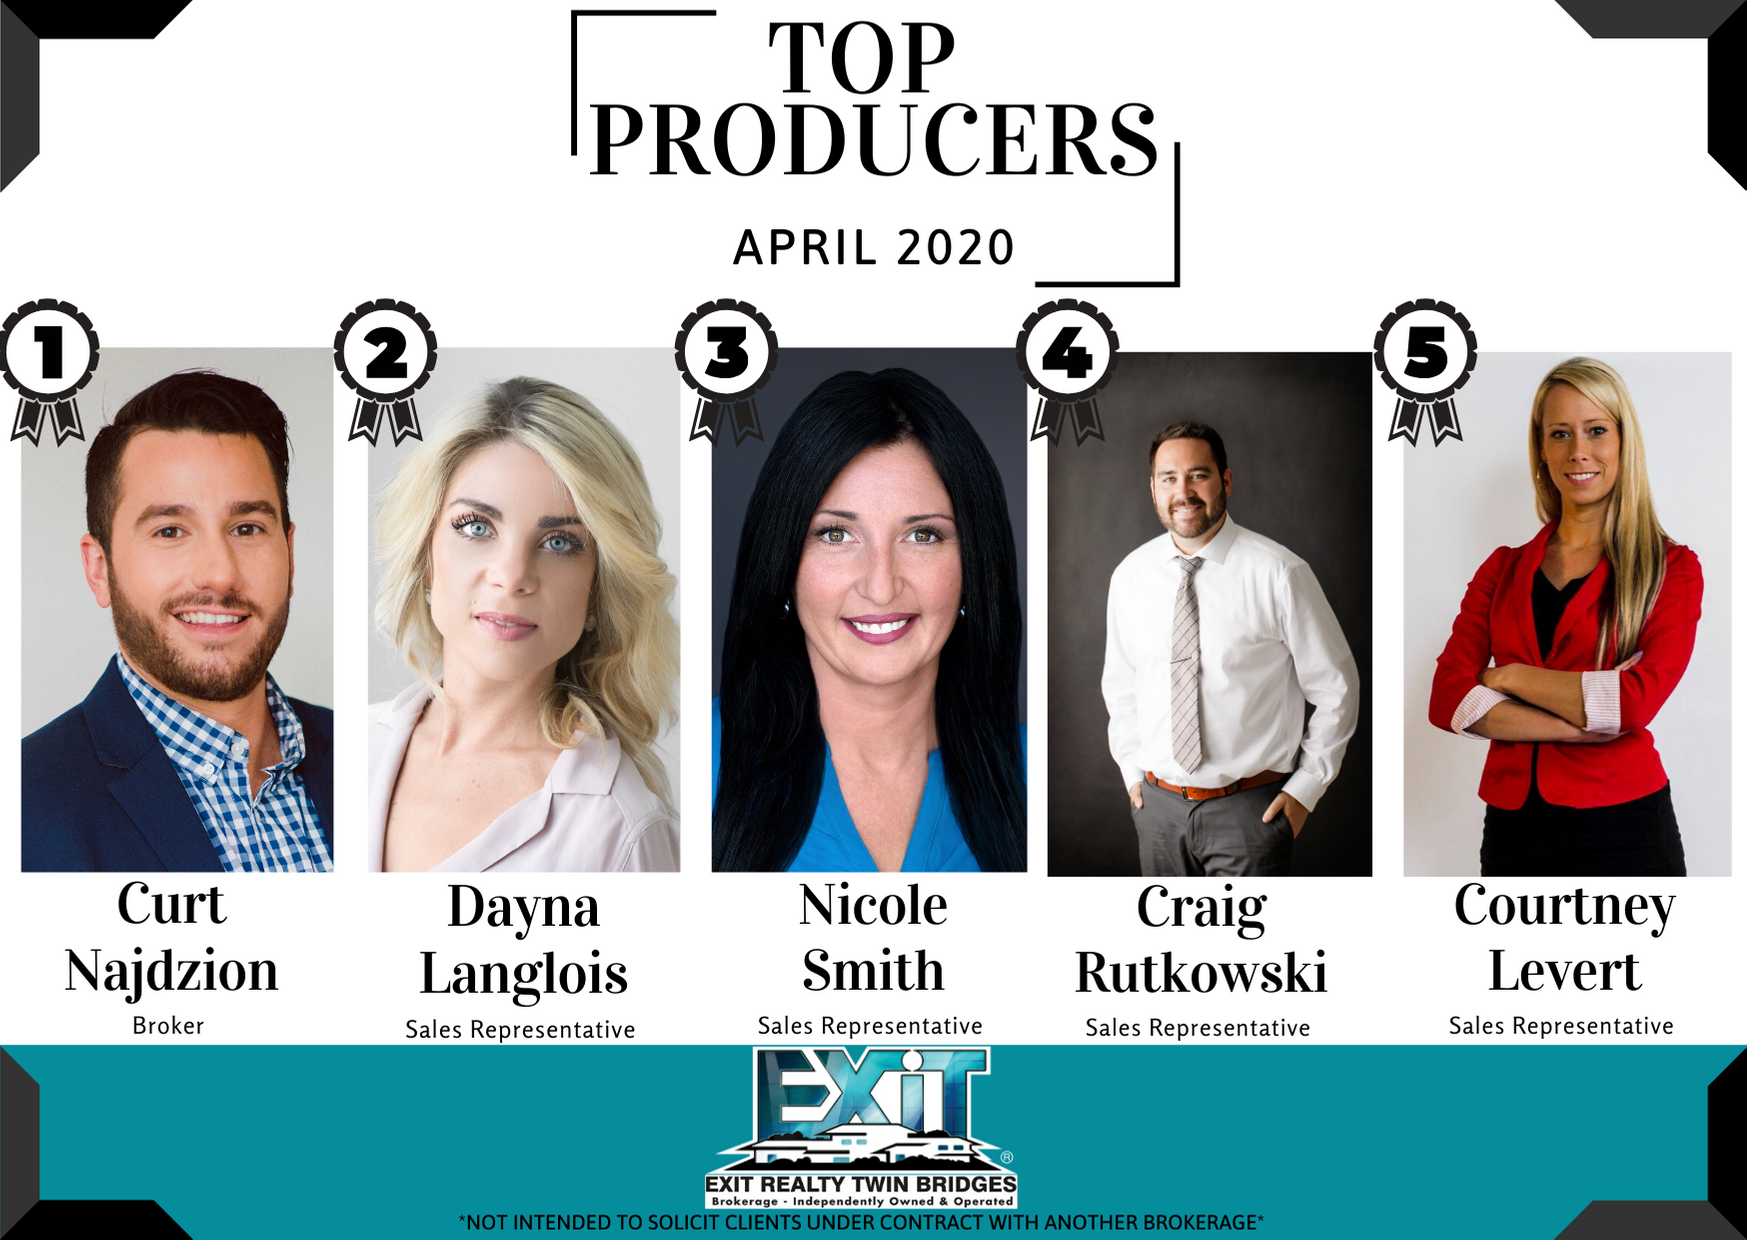 Top Producers April 2020